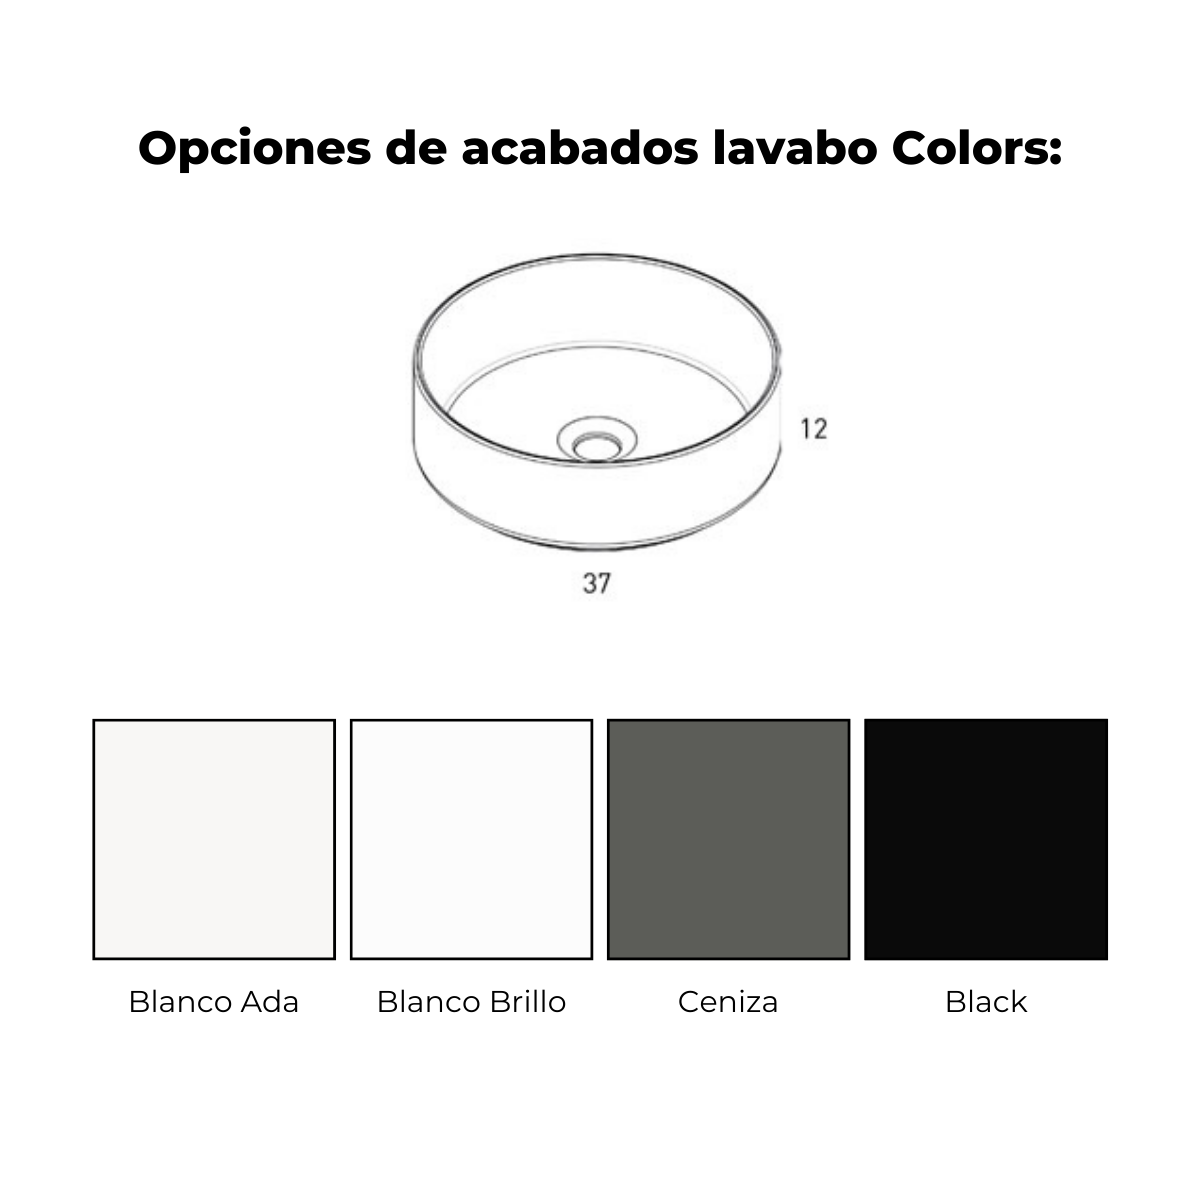 lavabo colors arco blanco 3c